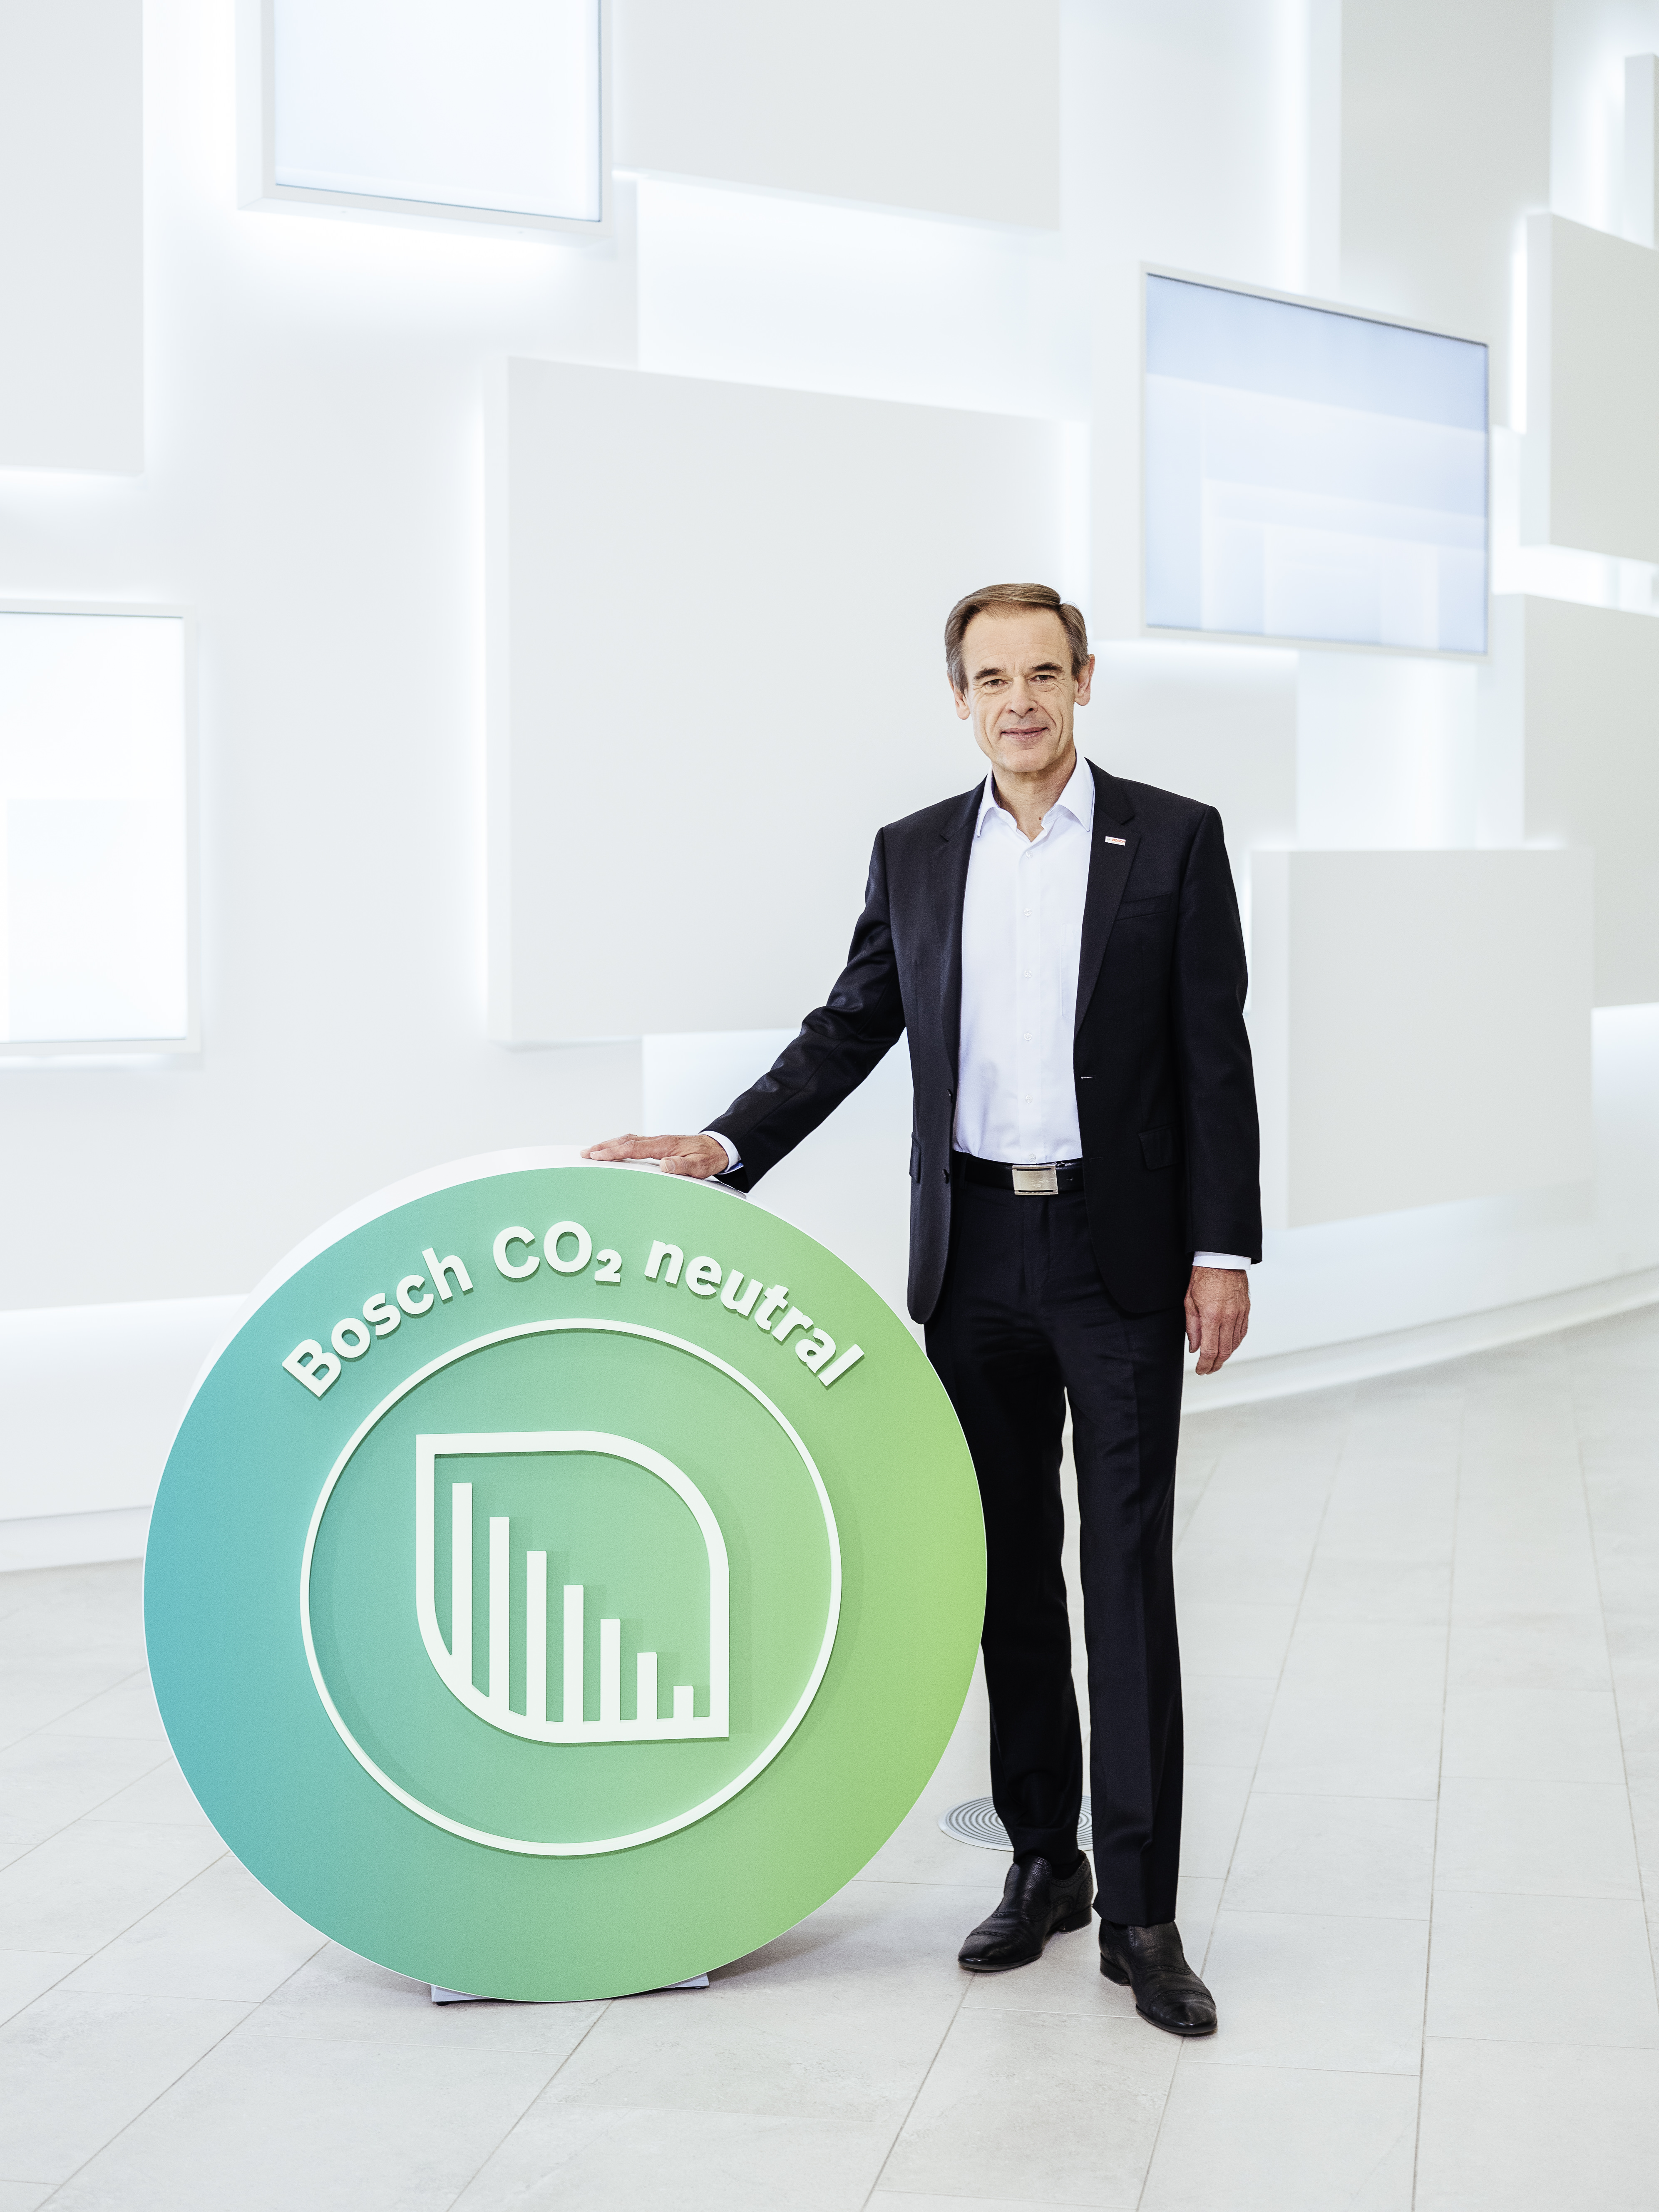 Neutralità climatica: Bosch amplia la fornitura di energia rinnovabile